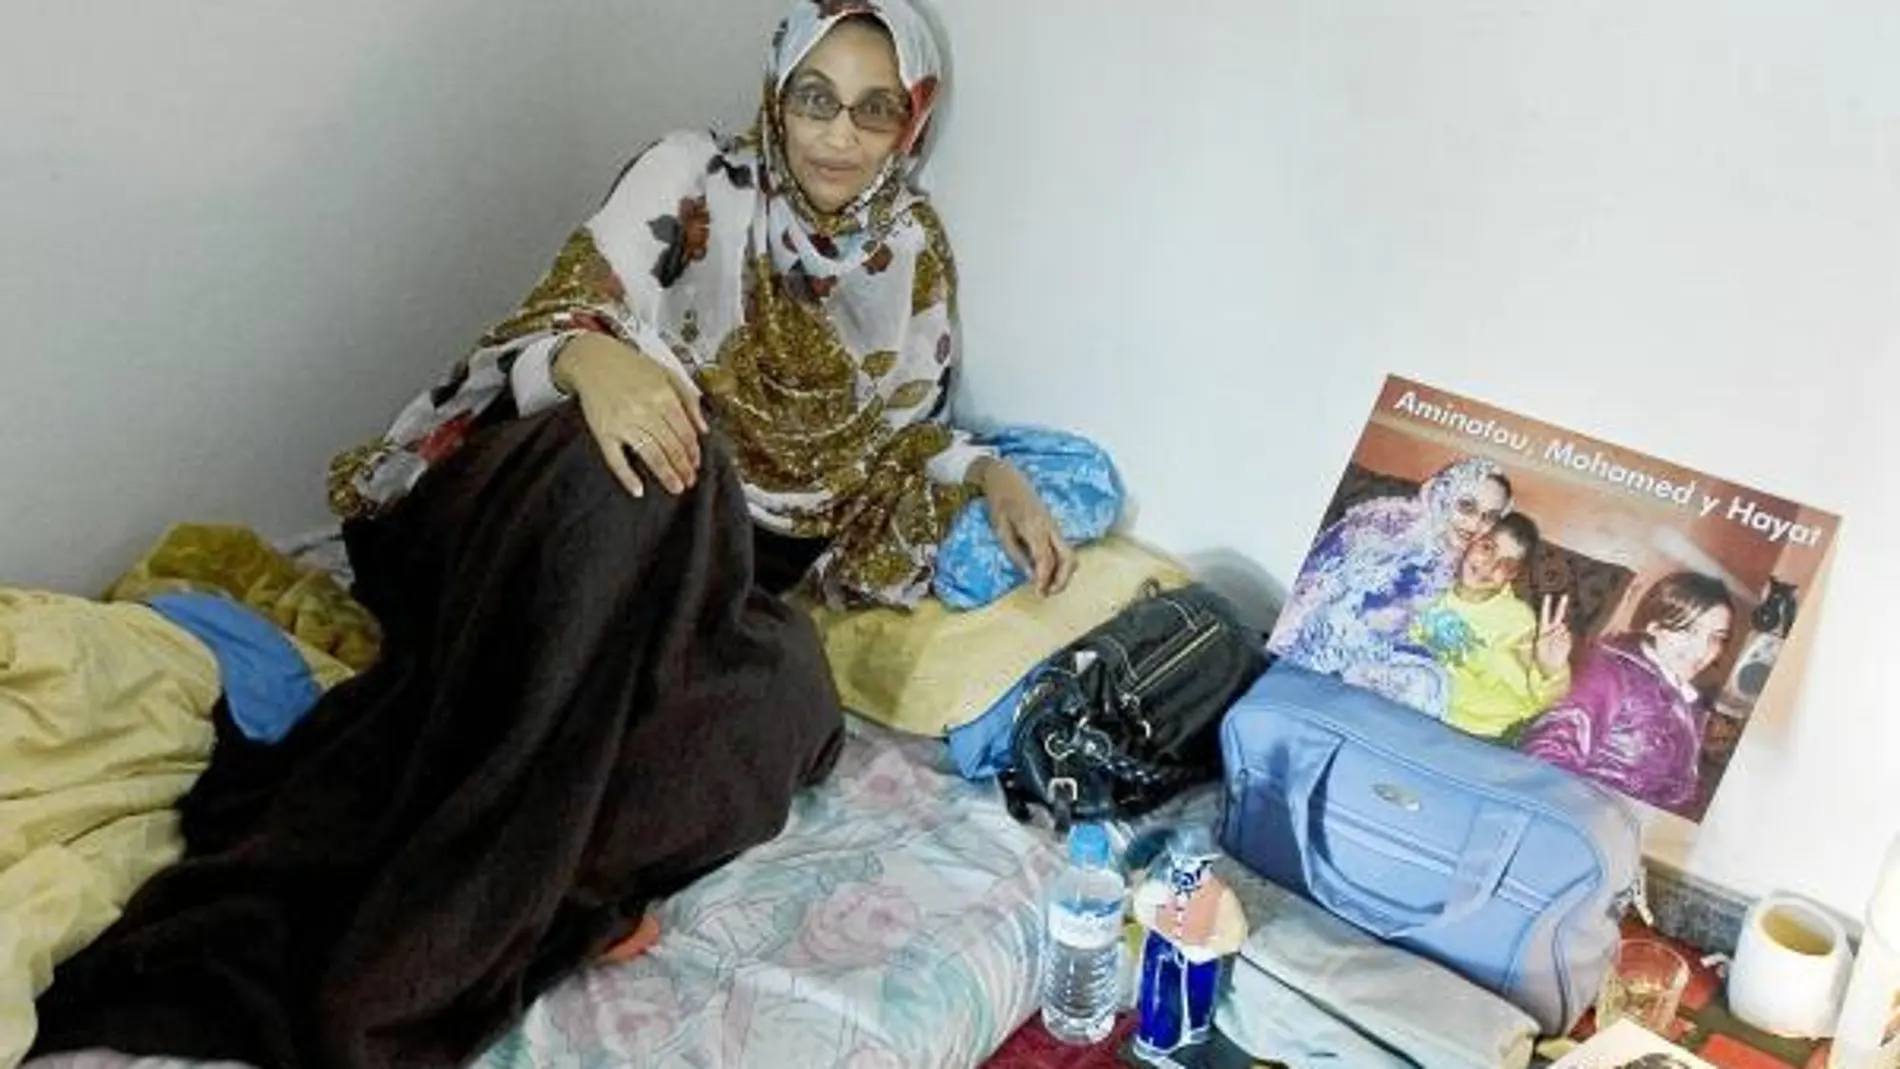 El 18 de diciembre de 2009 comenzaba el primero de 32 días de tensión. Marruecos denegó la entrada de la activista Aminatu Haidar, que inició una huelga de hambre. Tras numerosas negociaciones, España reconoció que en el Sahara prima la ley marroquí.